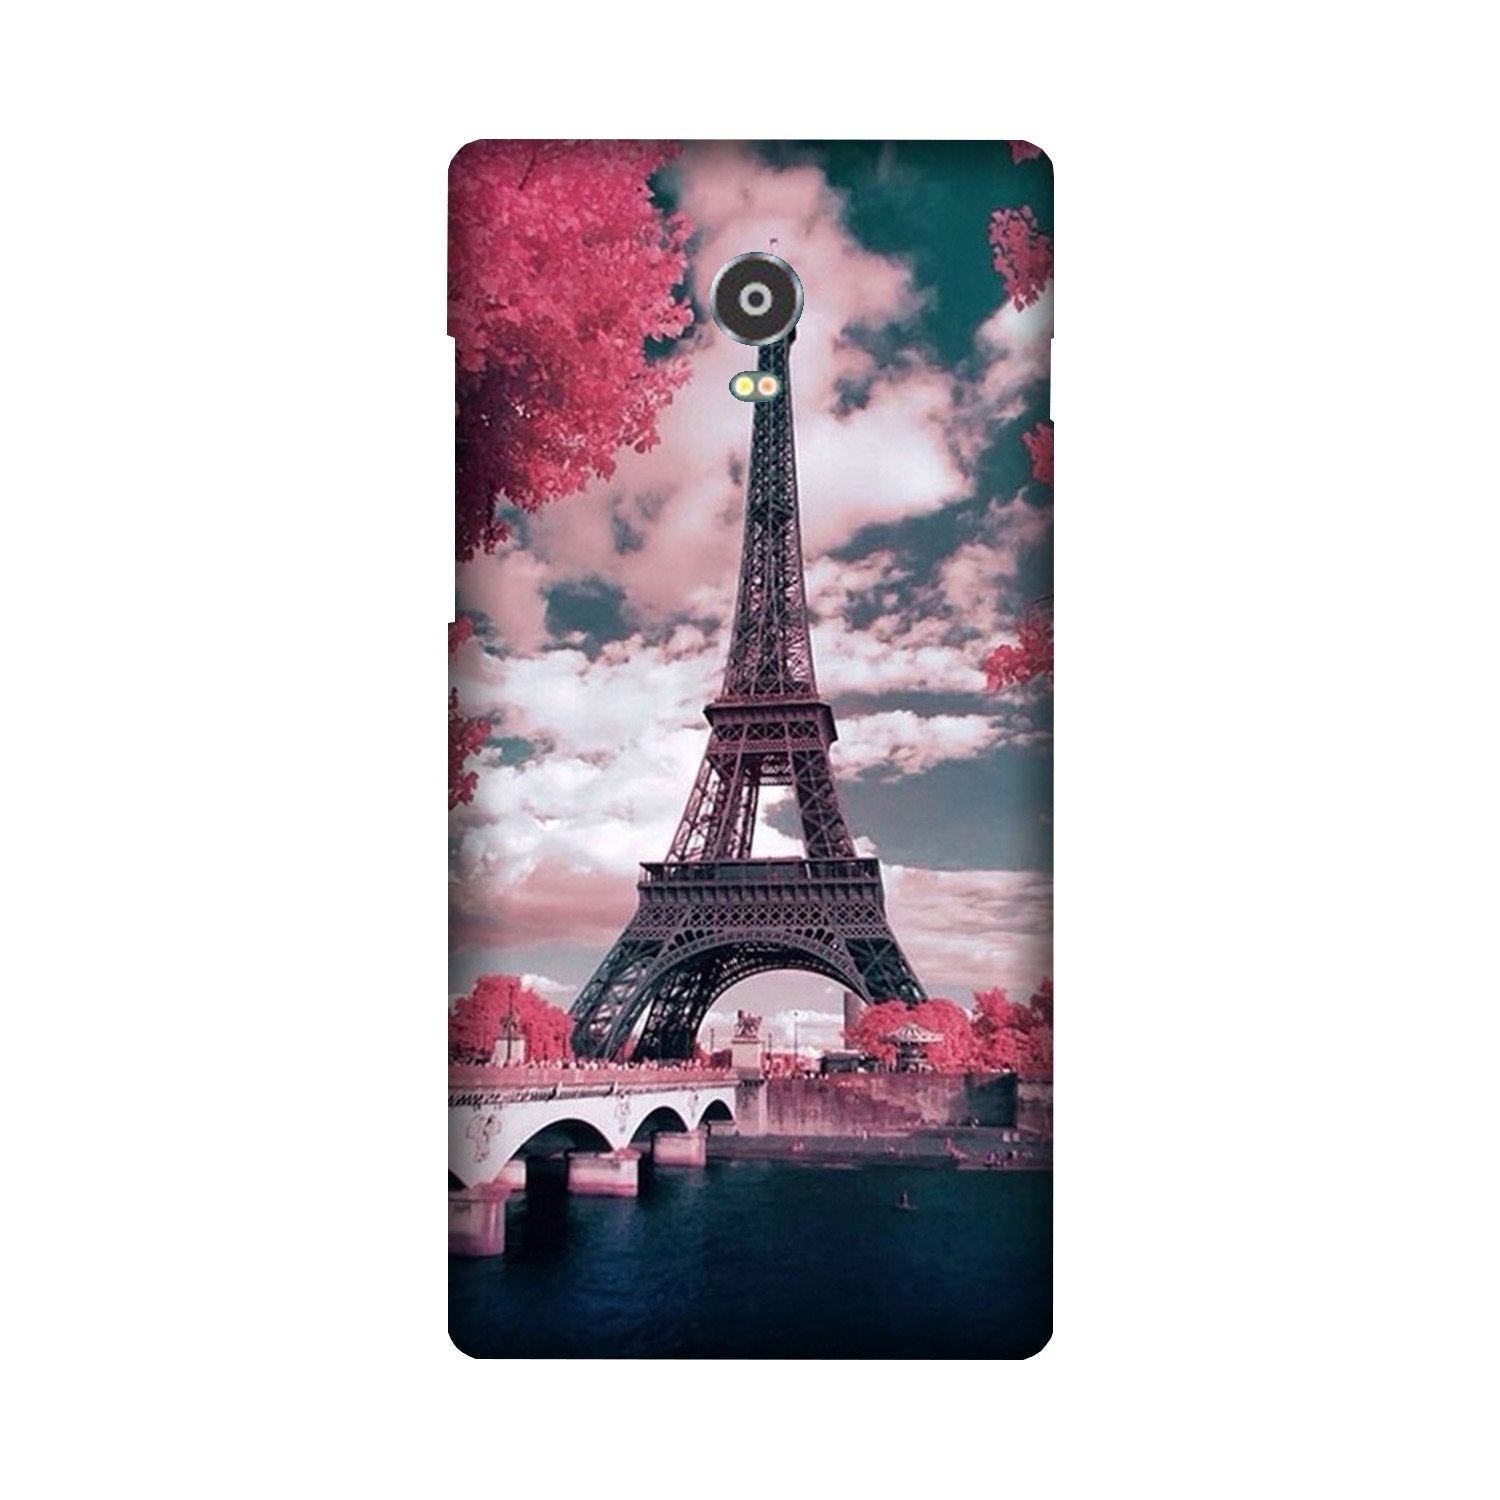 Eiffel Tower Case for Lenovo Vibe P1(Design - 101)